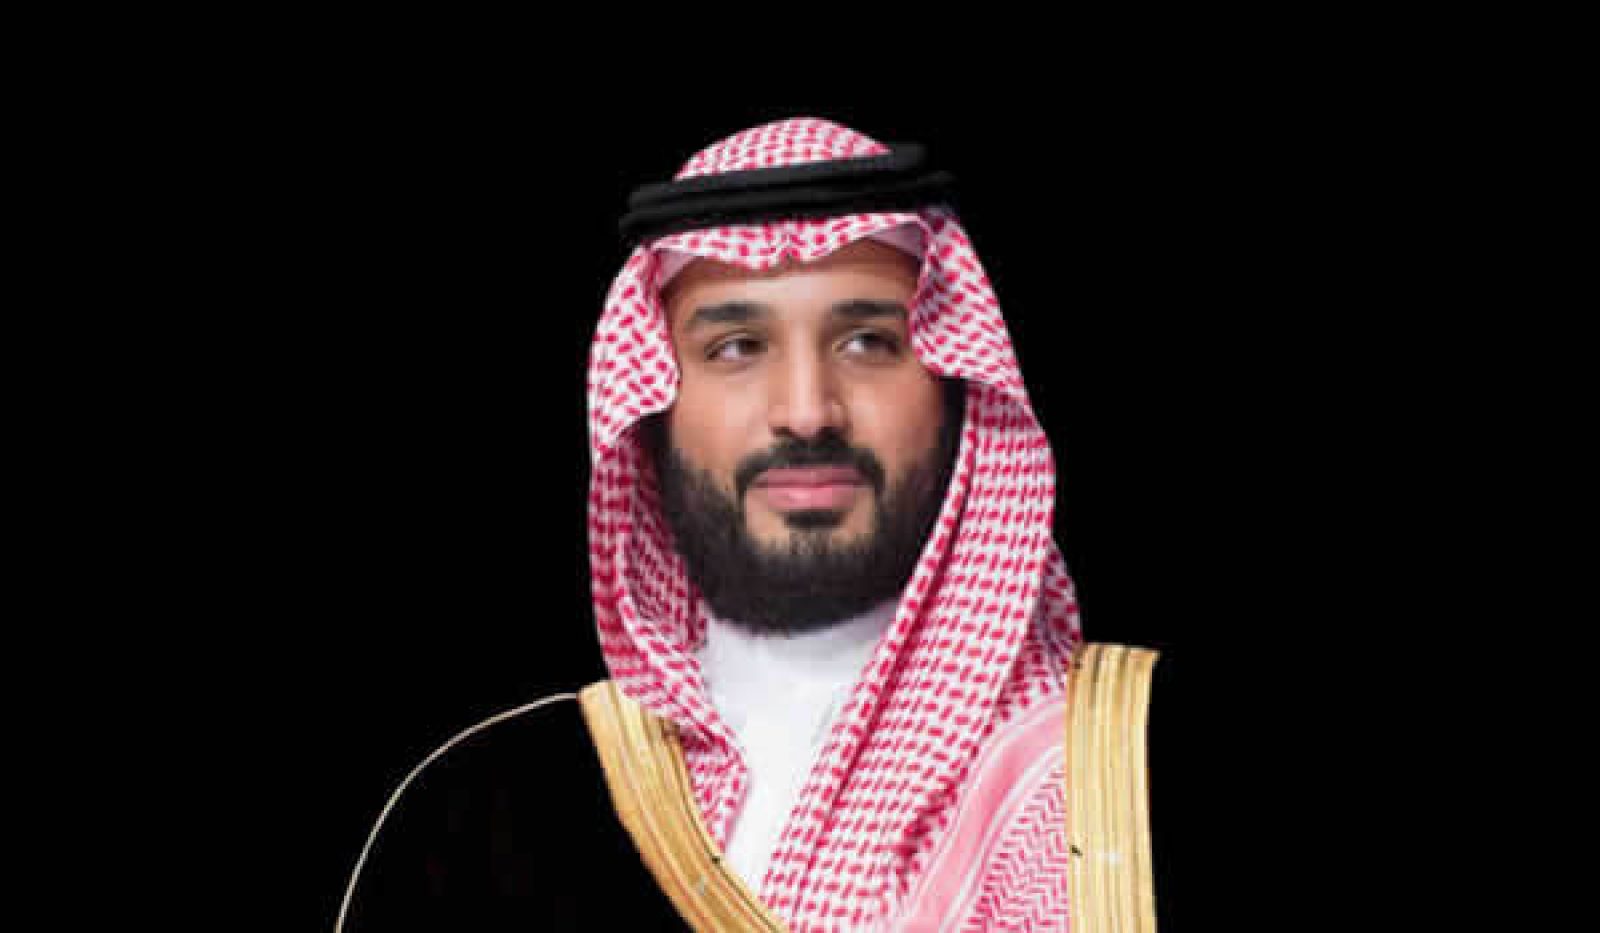 اقتصادي / سمو ولي العهد يعلن إطلاق شركة تطوير المربع الجديد لتطوير أكبر “داون تاون” حديث عالمياً في مدينة الرياض